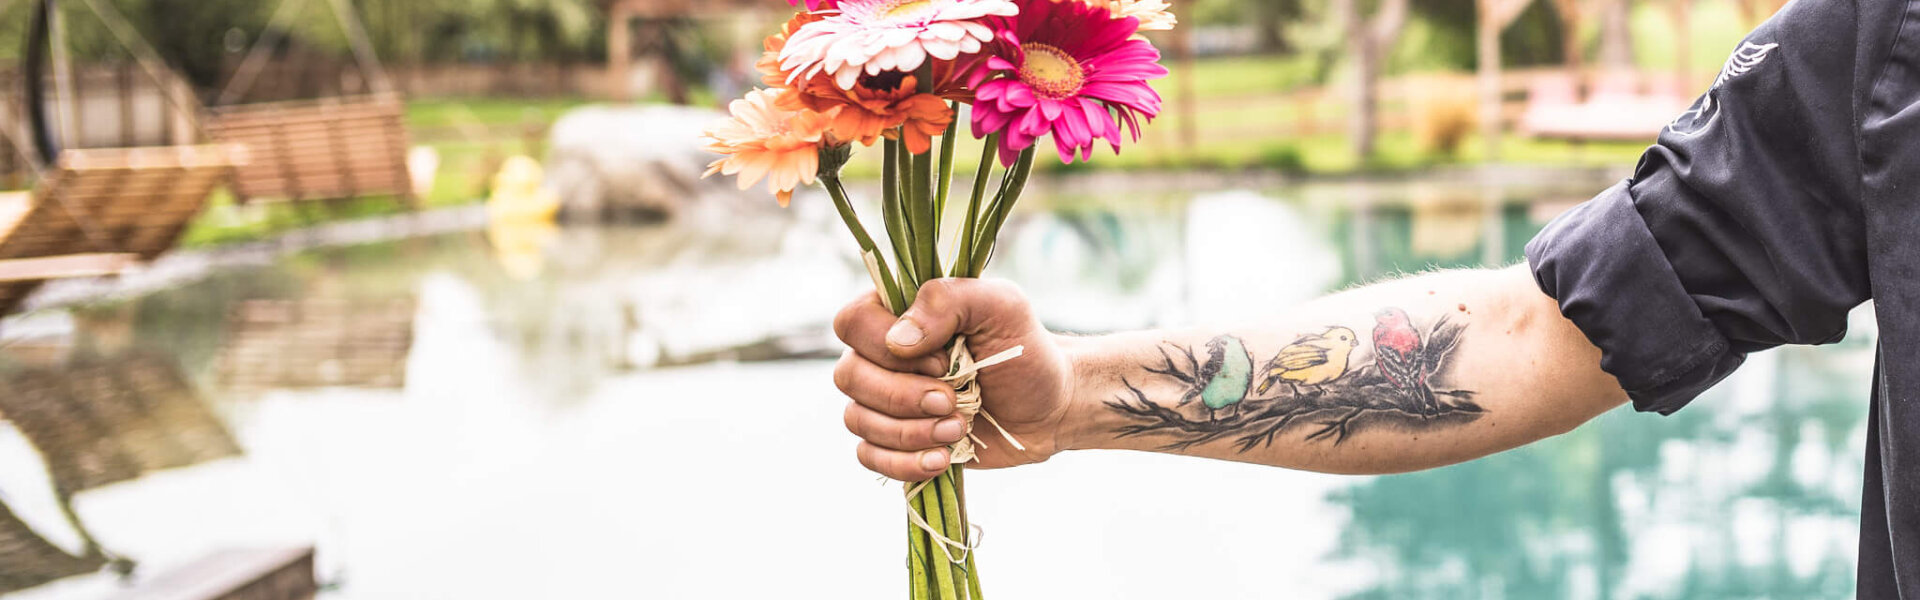 Tätowierte Hand hält einen bunten Blumenstrauß